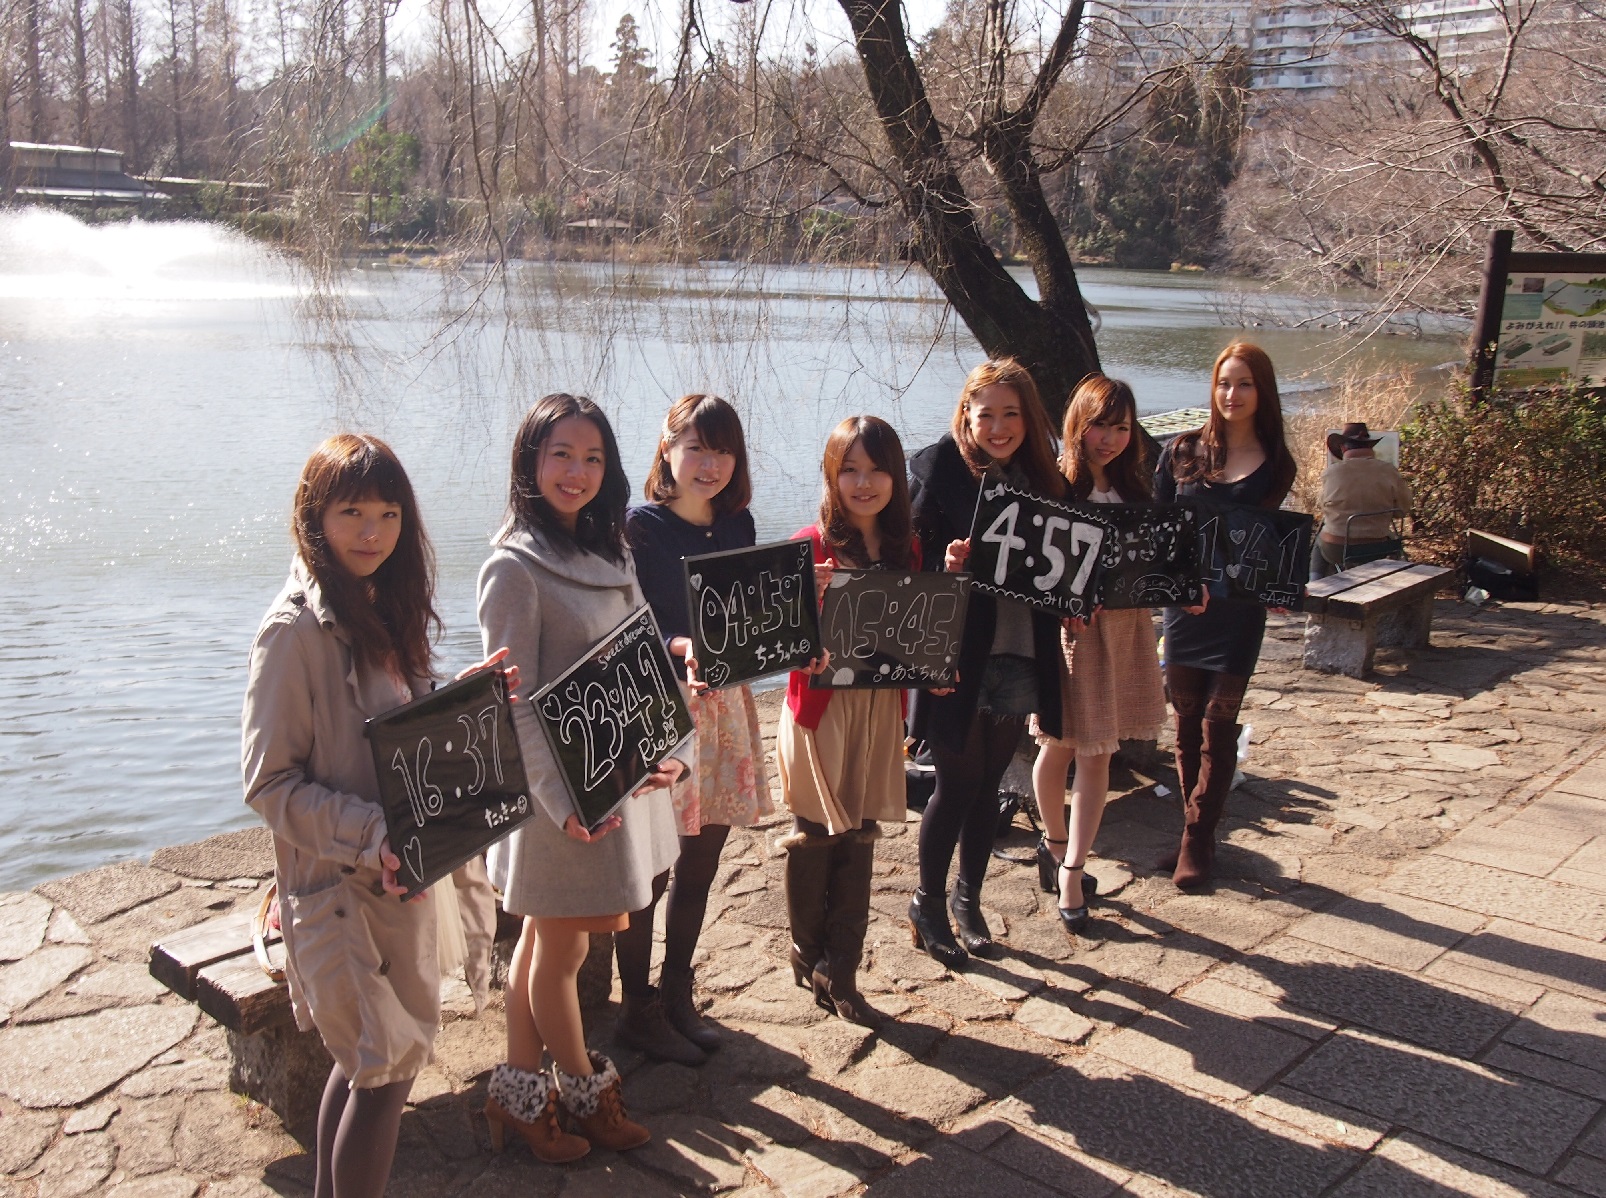 武蔵野美人時計、市内各地で撮影会、参加者募集  地元女性が武蔵野市の情報をお知らせする「美人トピック」 武蔵野市版スタートに伴い、市内各地で撮影会、出演者募集